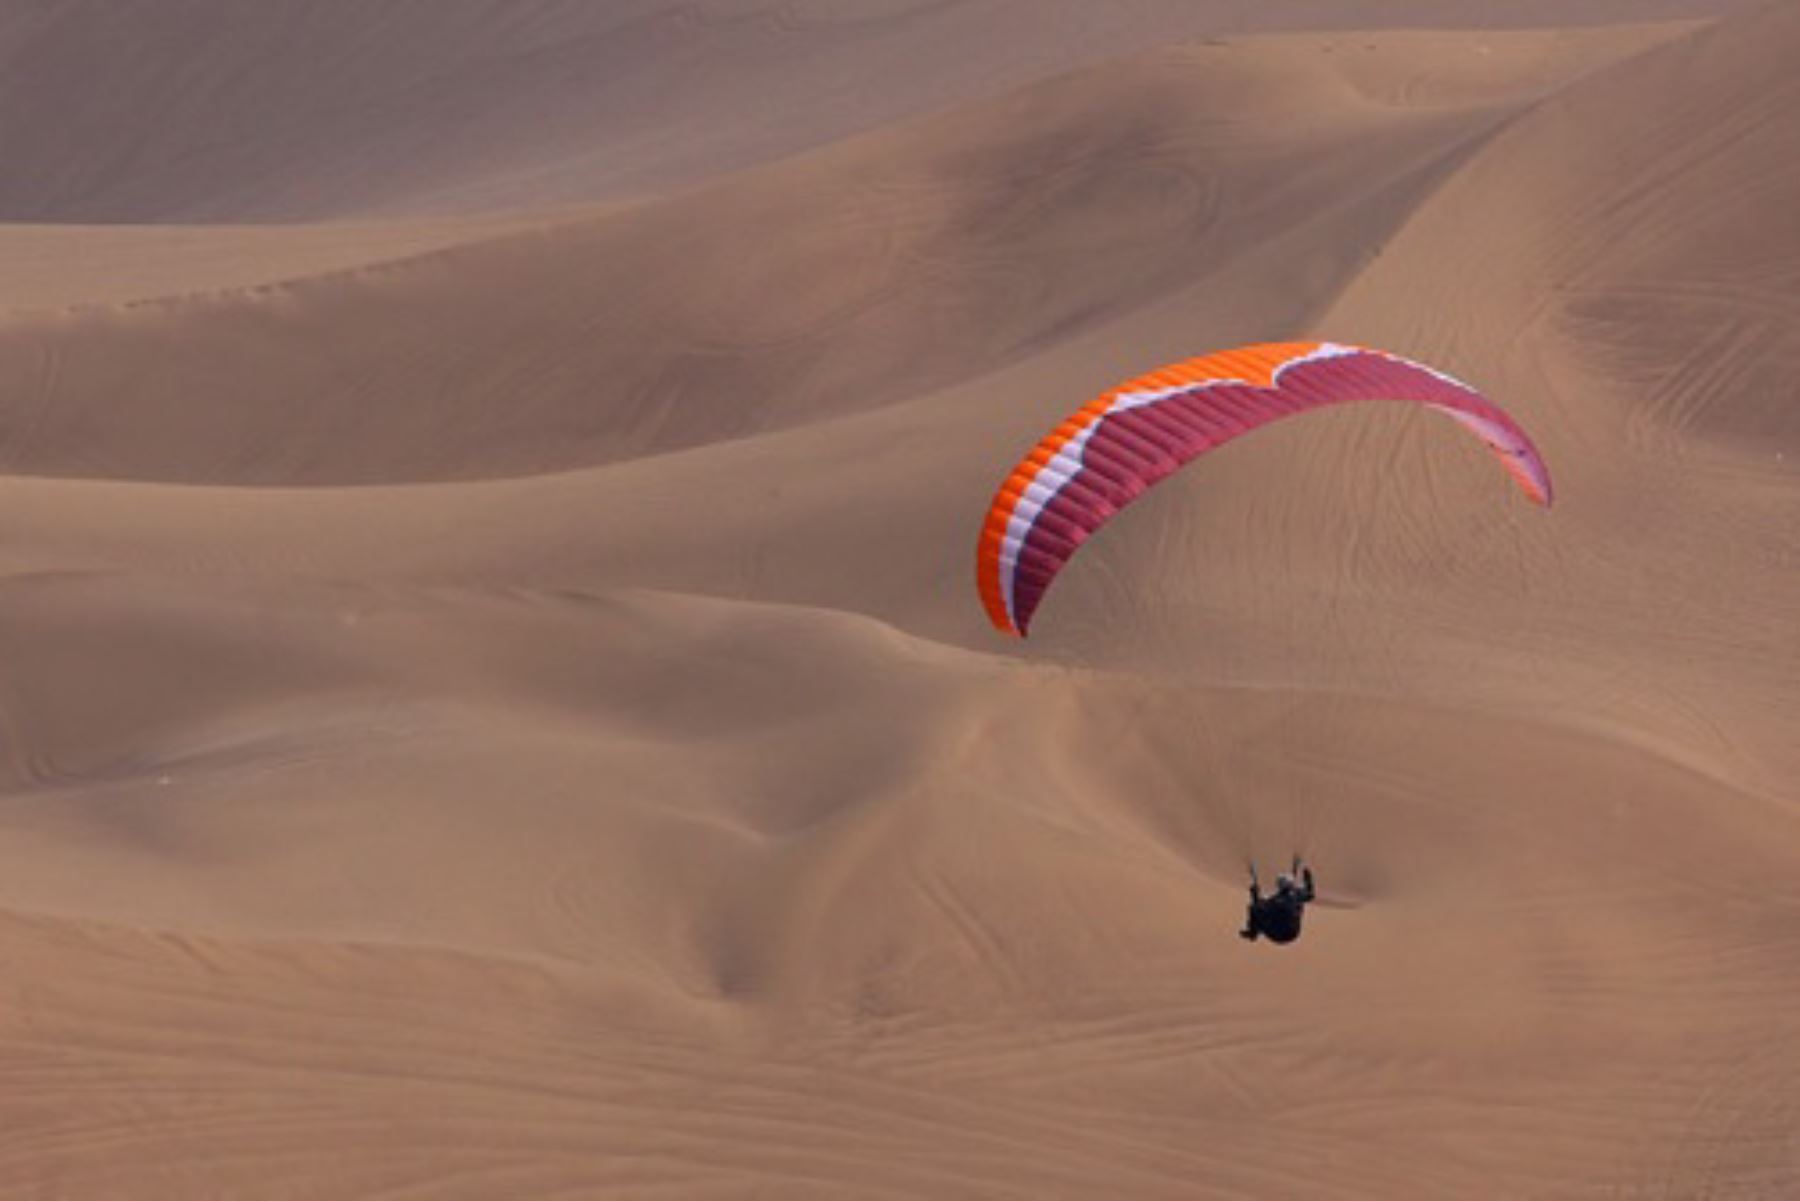 El parapente es una modalidad de turismo de aventura que consiste en utilizar un equipo aerodinámico, ultra liviano y flexible que utiliza la fuerza de tracción humana para despegar y aterrizar.